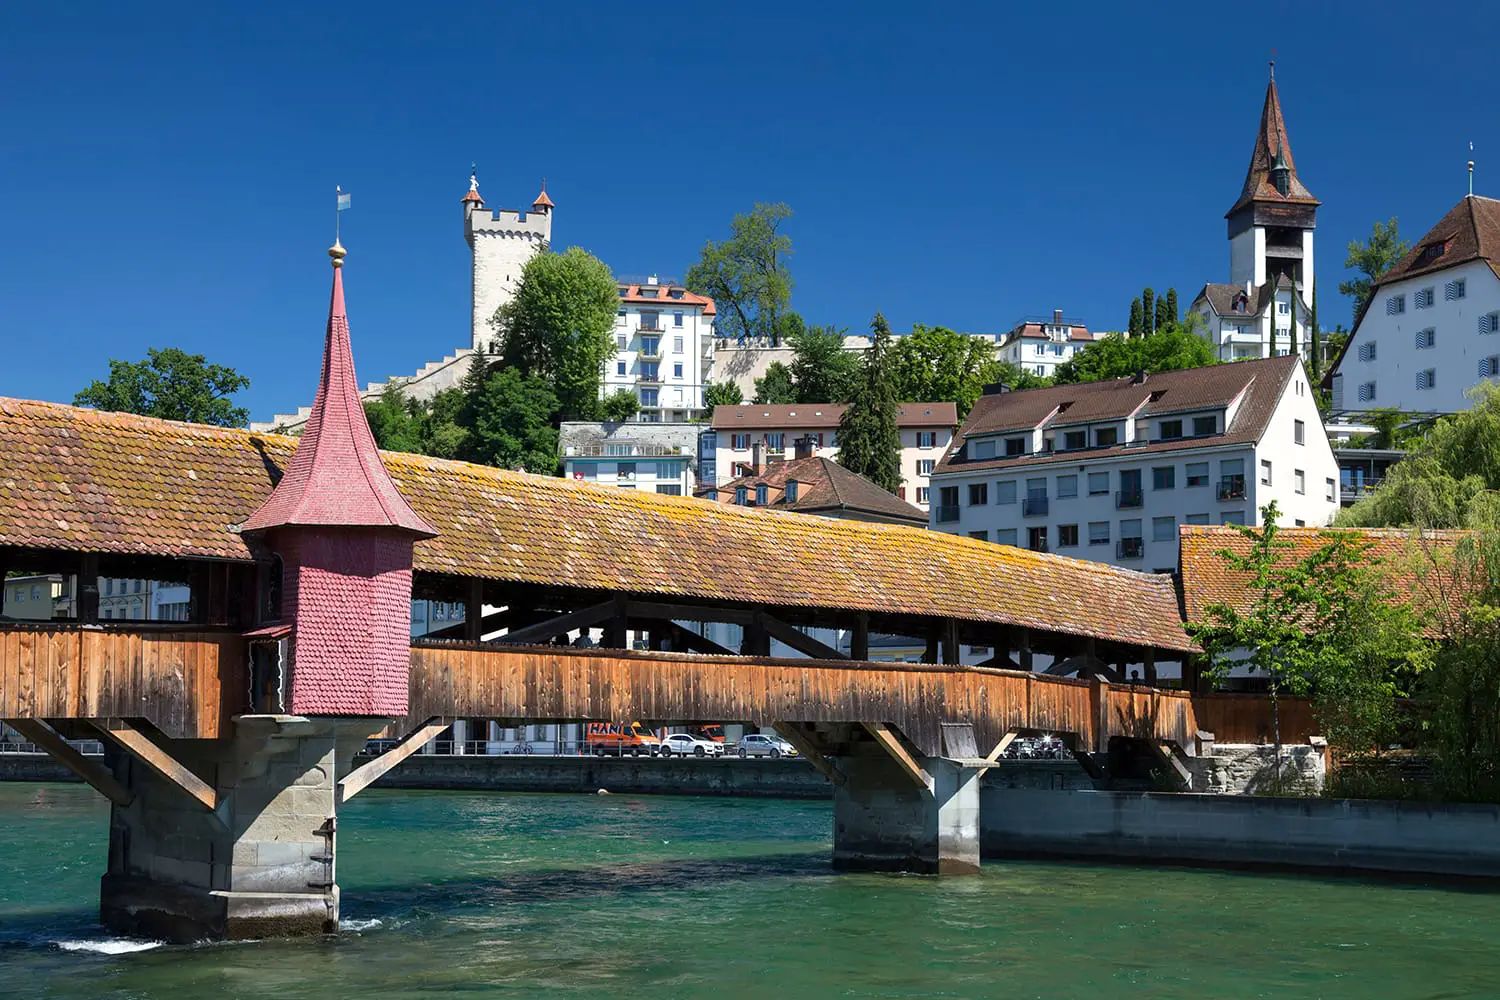 The Spreuer Bridge over the river Reuss, Lucerne, Switzerland